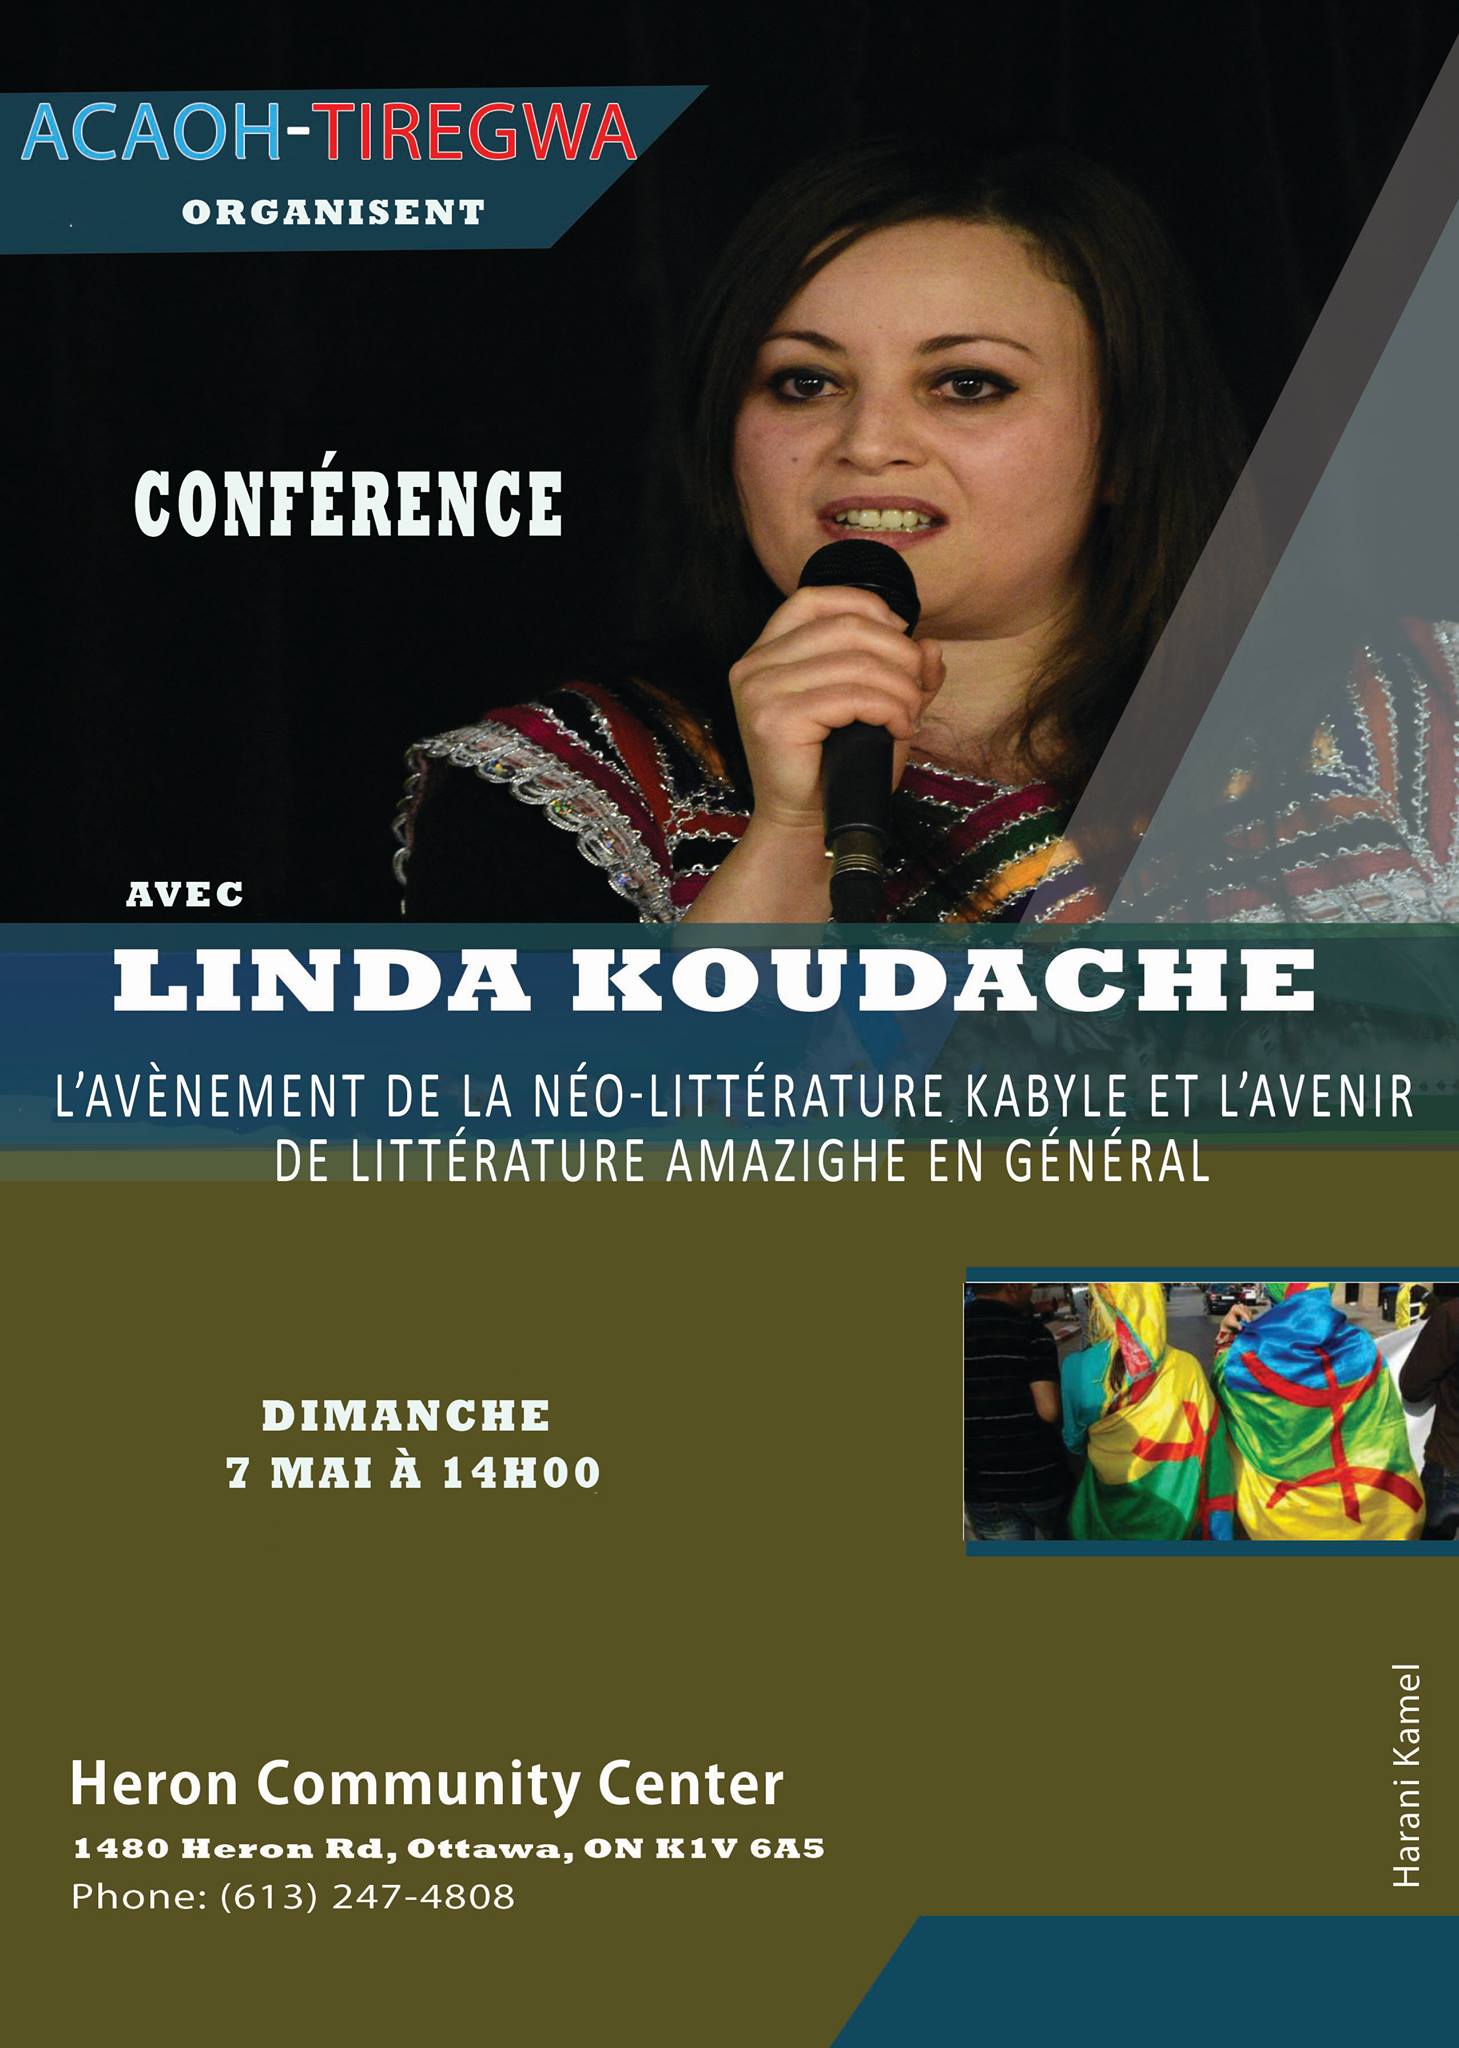 Lynda Koudache